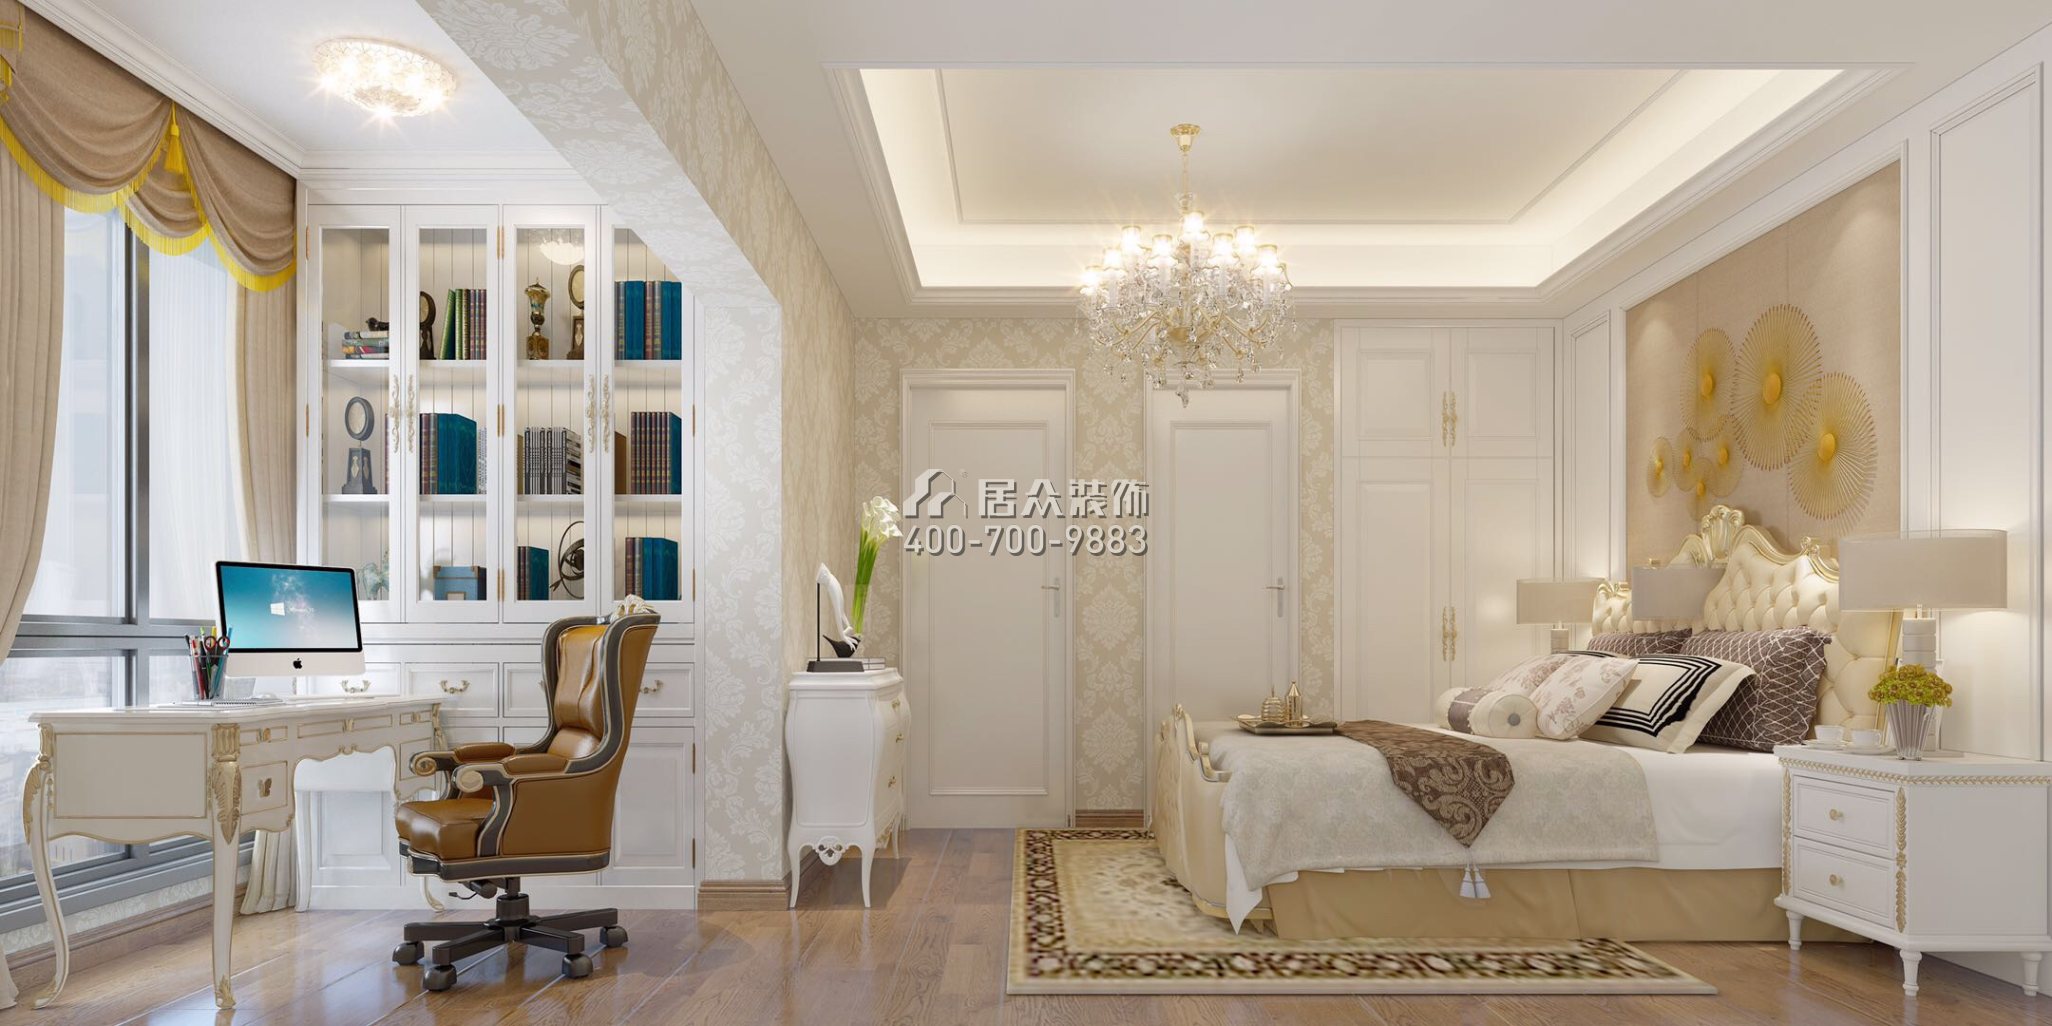 海印长城110平方米欧式风格平层户型卧室装修效果图